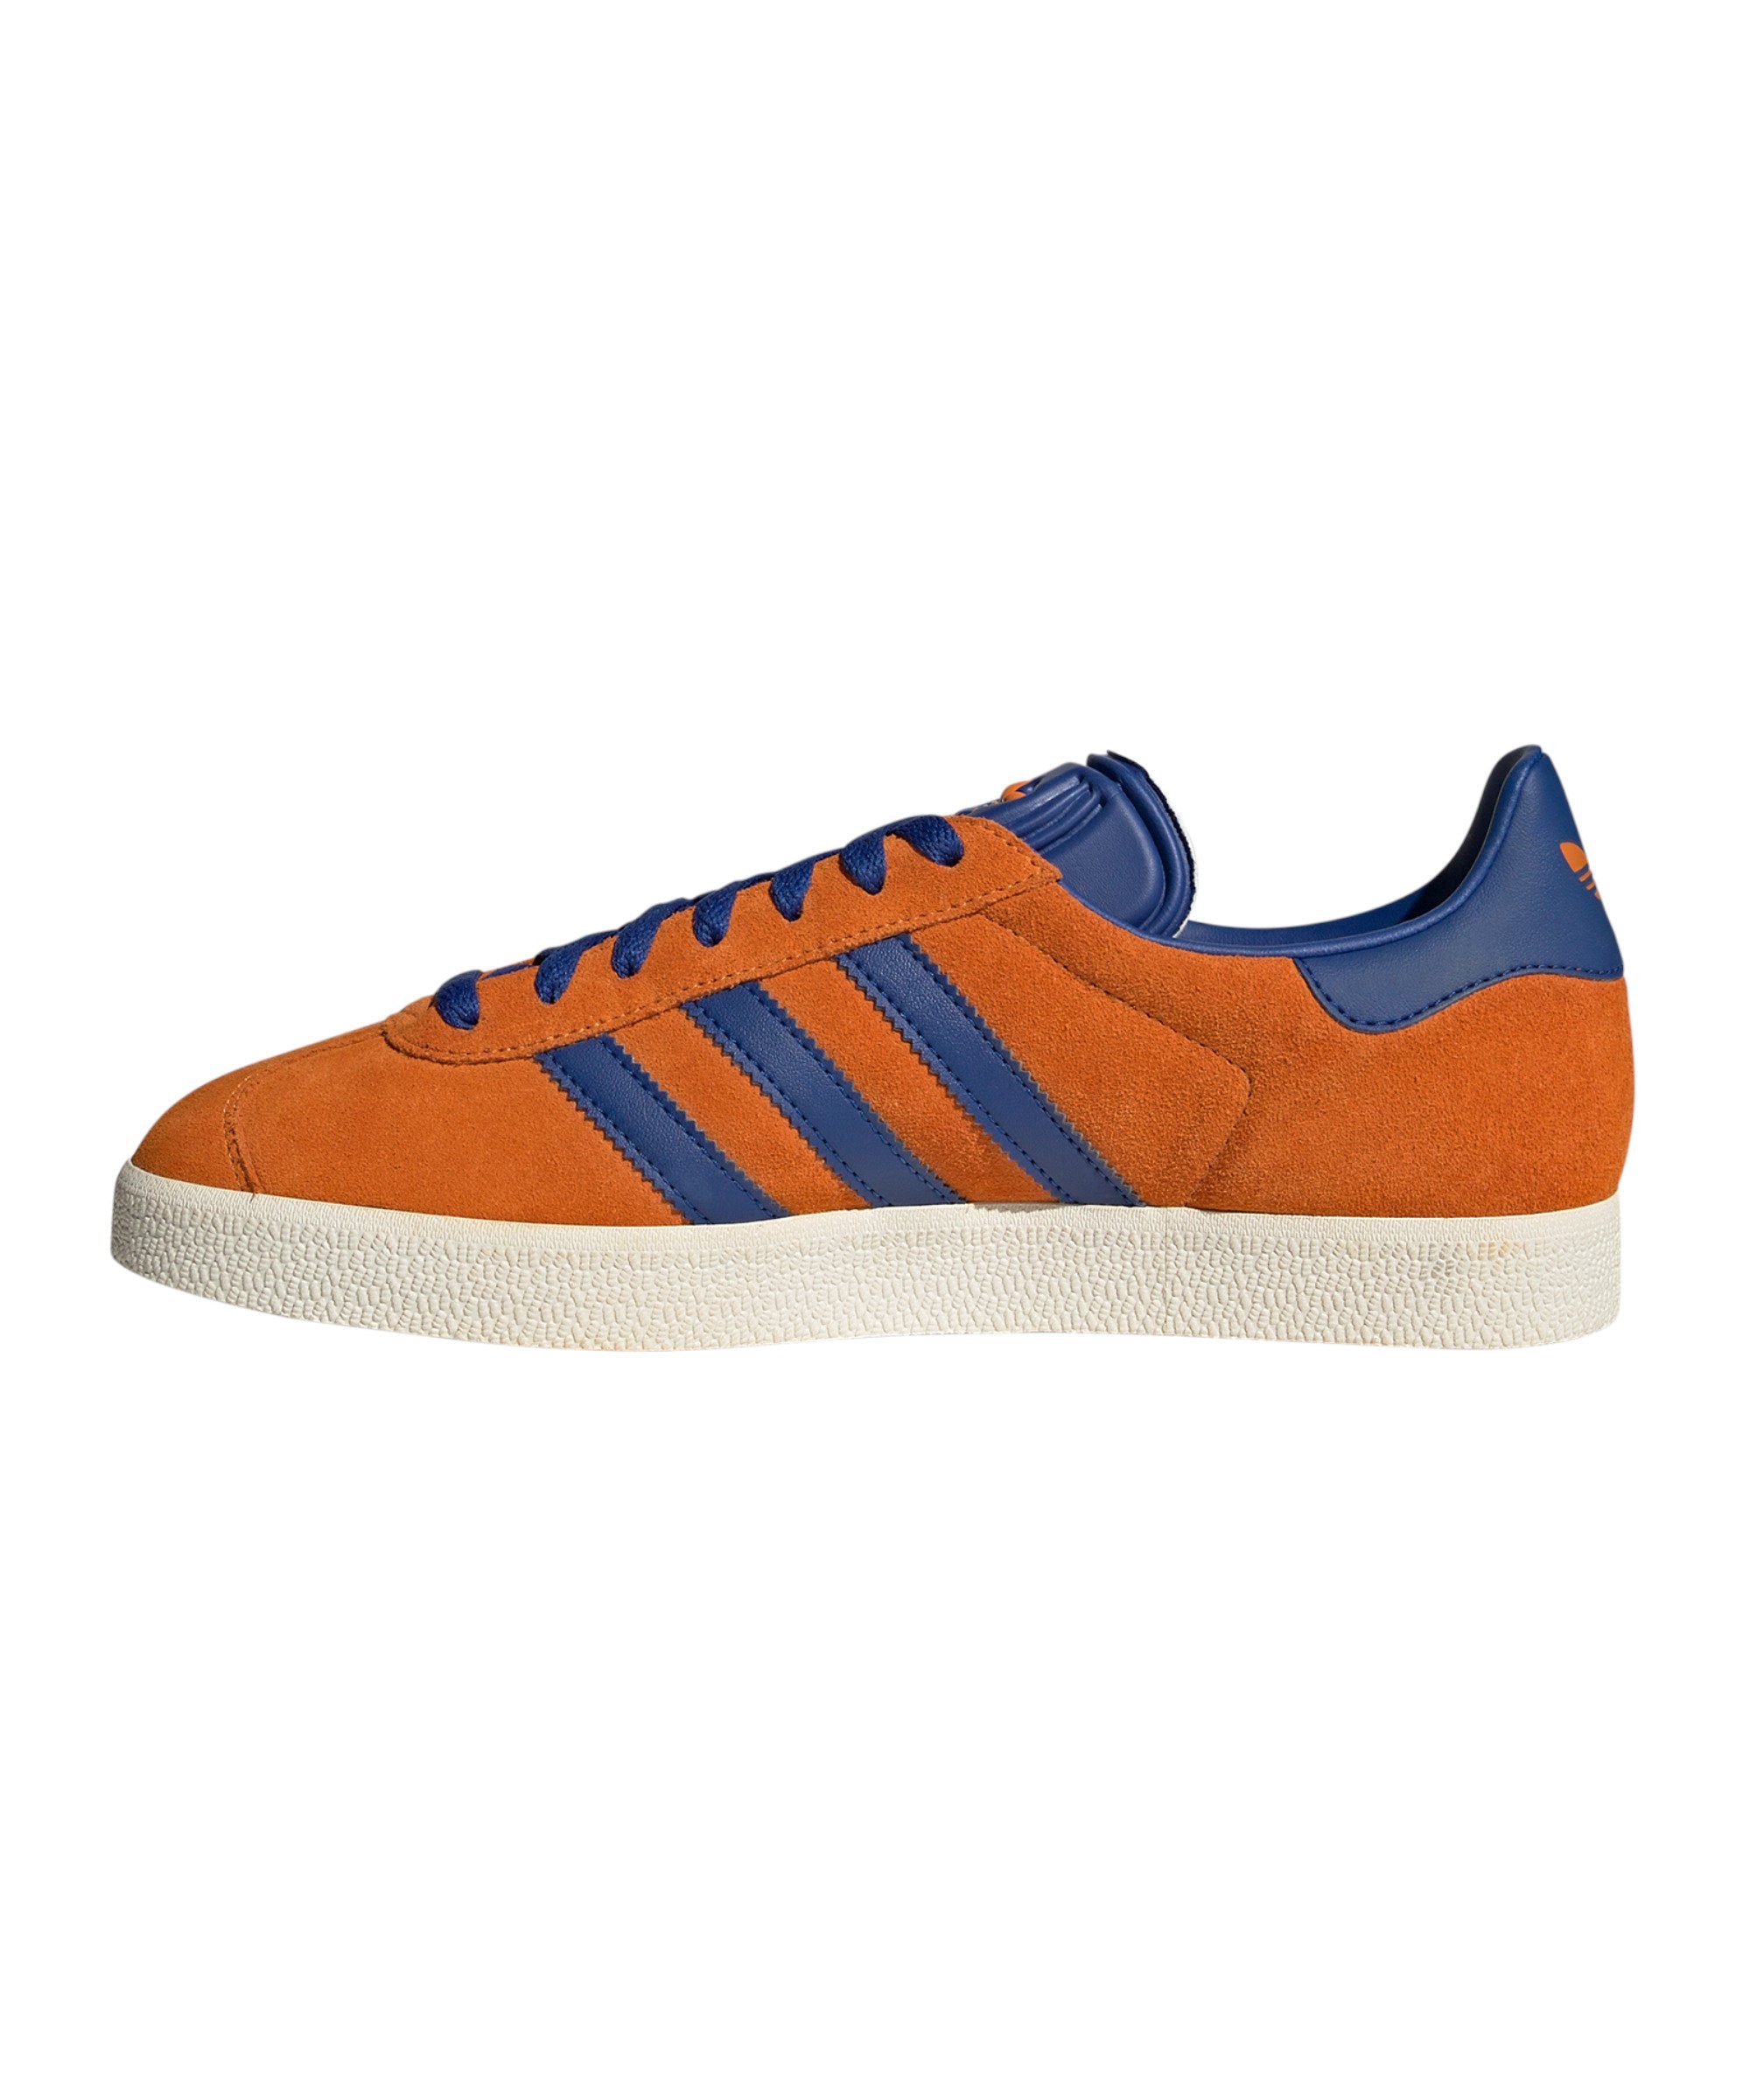 Gazelle orangeblauweiss Originals Sneaker adidas